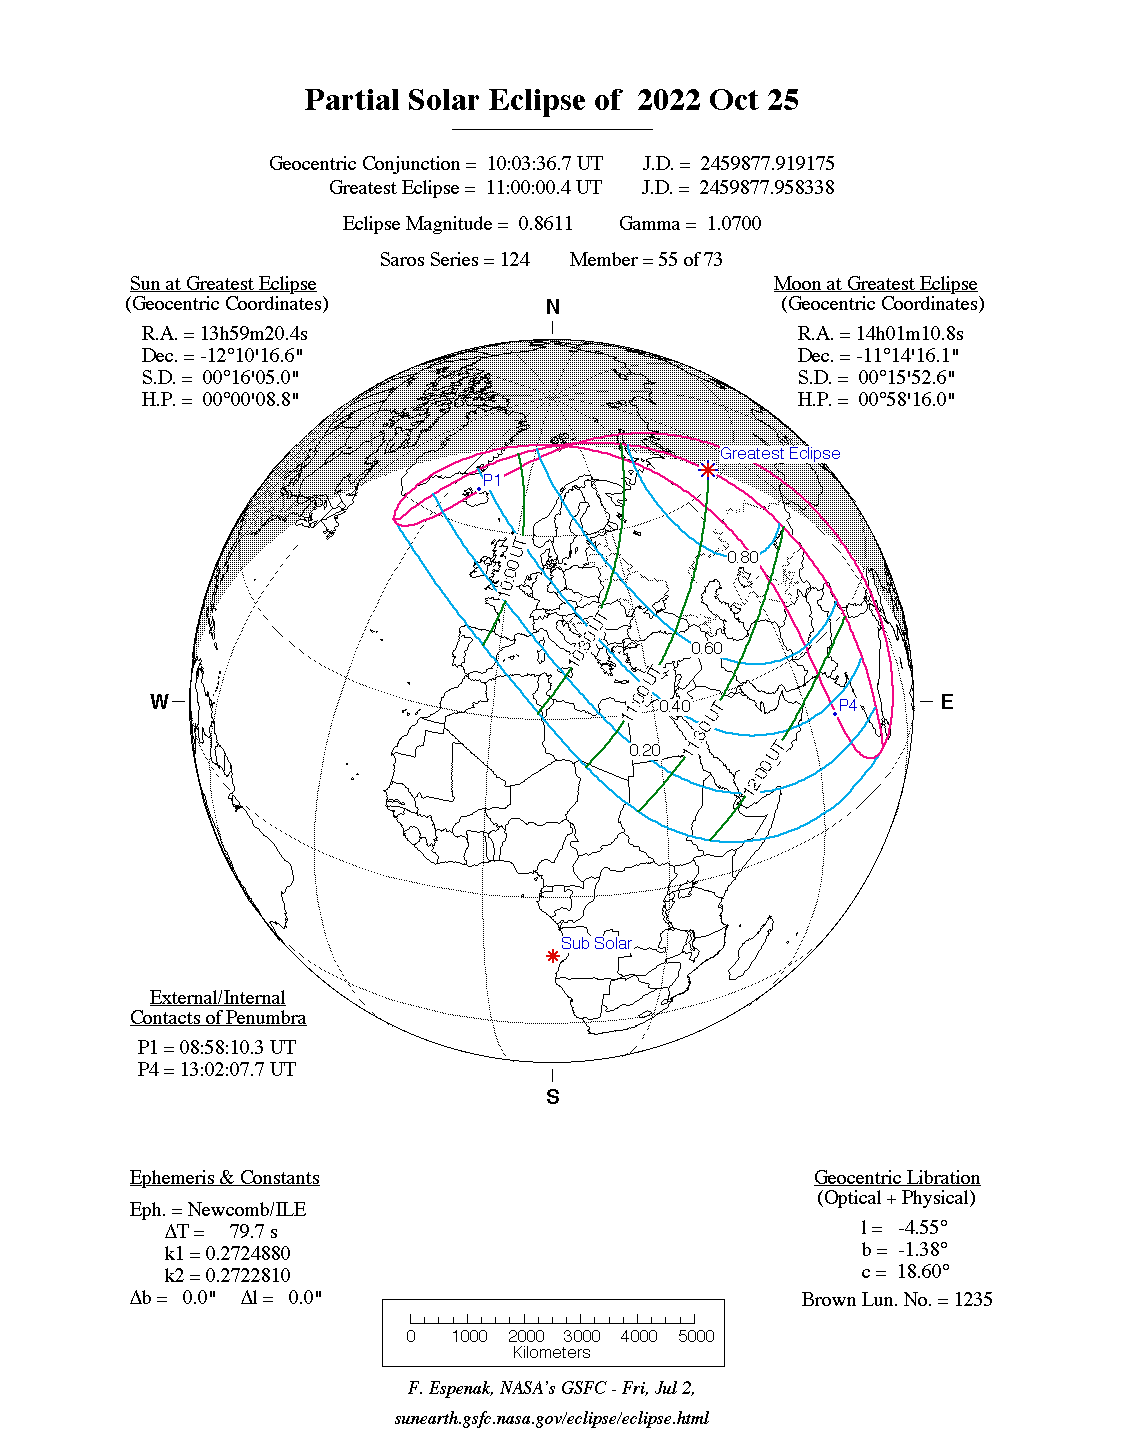 Verlauf der Partiellen Sonnenfinsternis am 25.10.2022